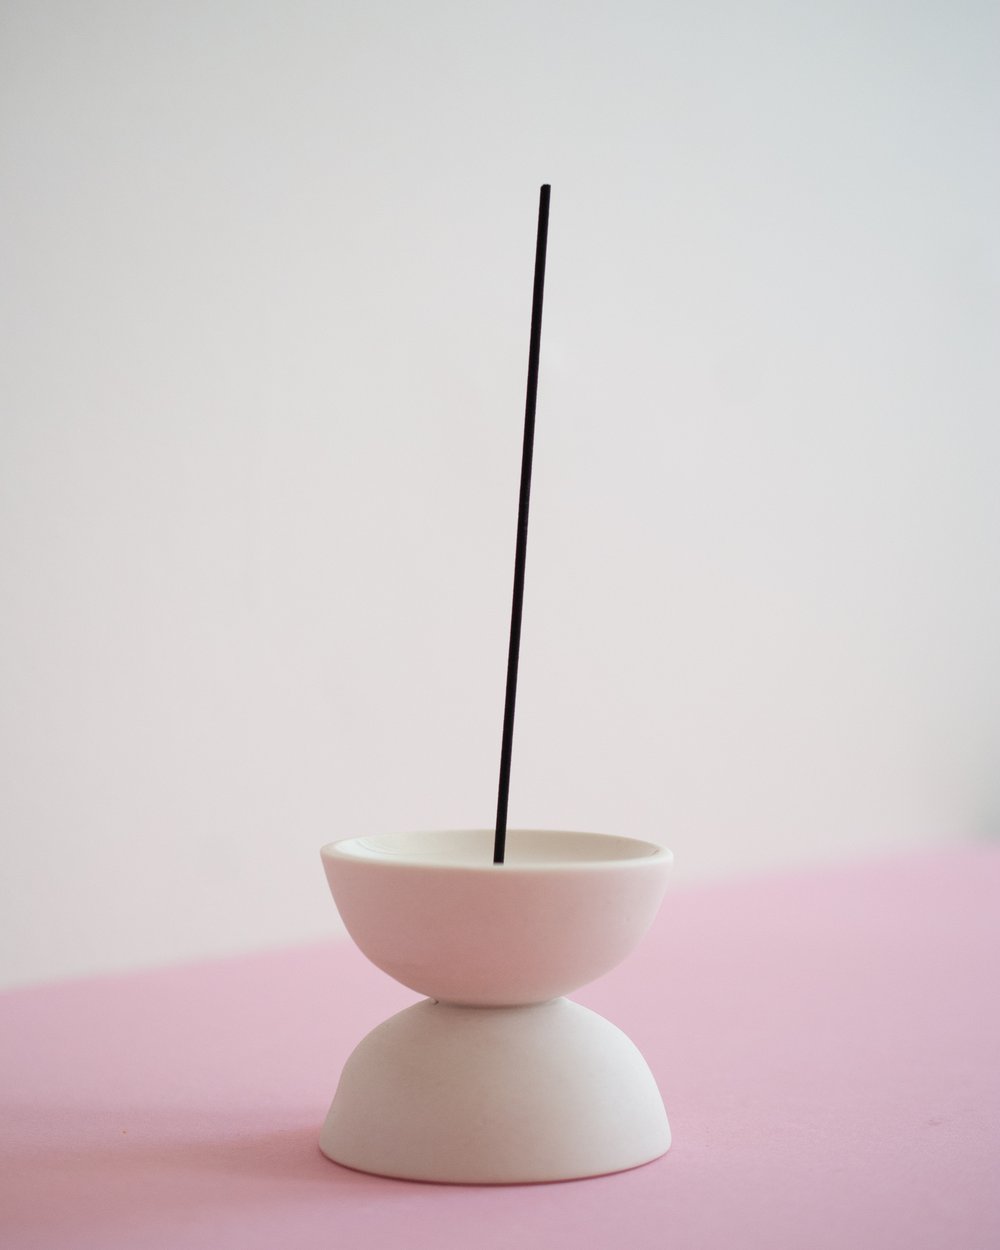 Image of Incense holder